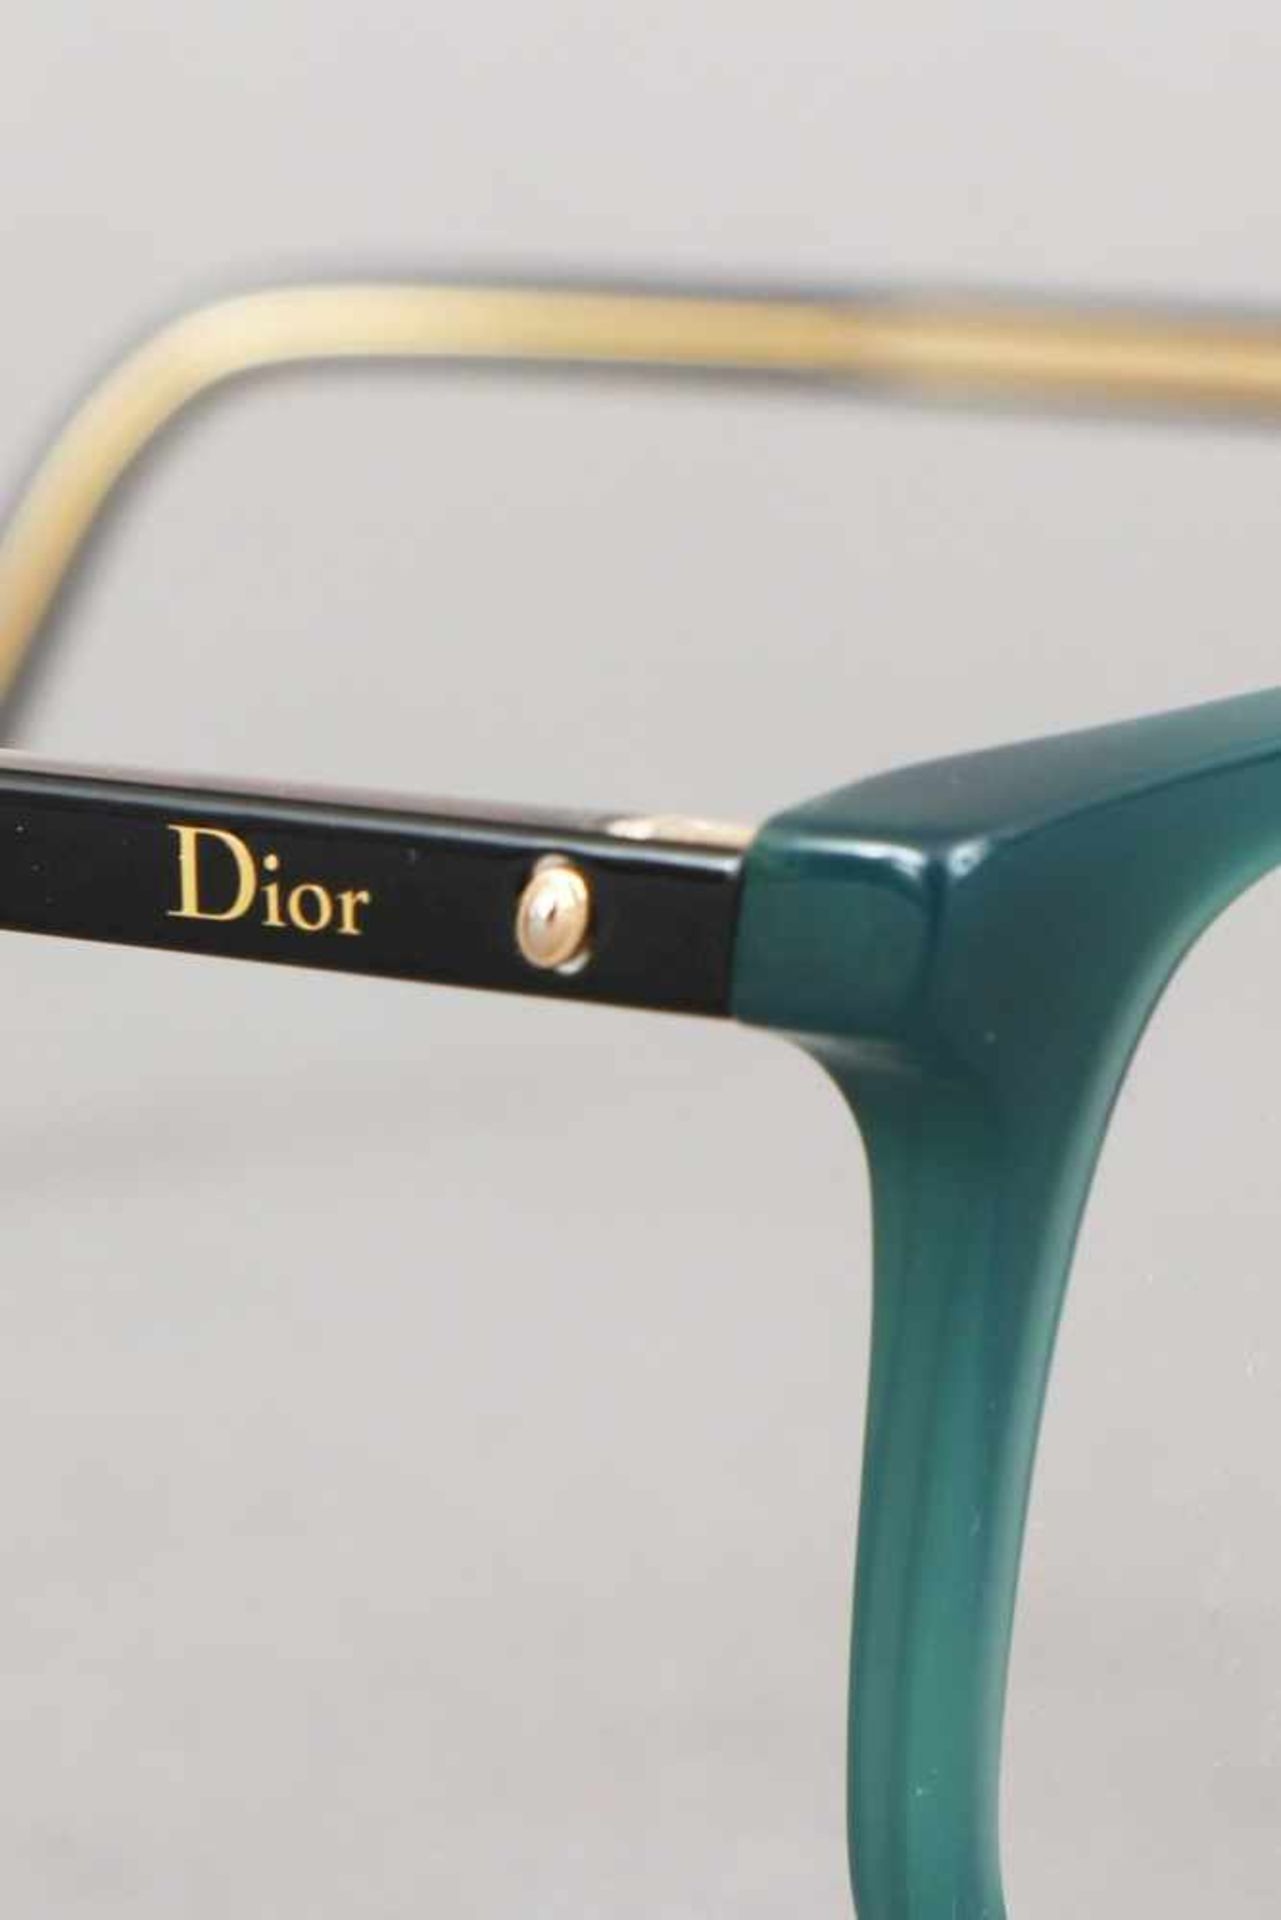 CHRISTIAN DIOR Brillengestell dunkelgrüner Rahmen, Bügel außen schwarz, innen goldfarben, geringe - Image 2 of 3